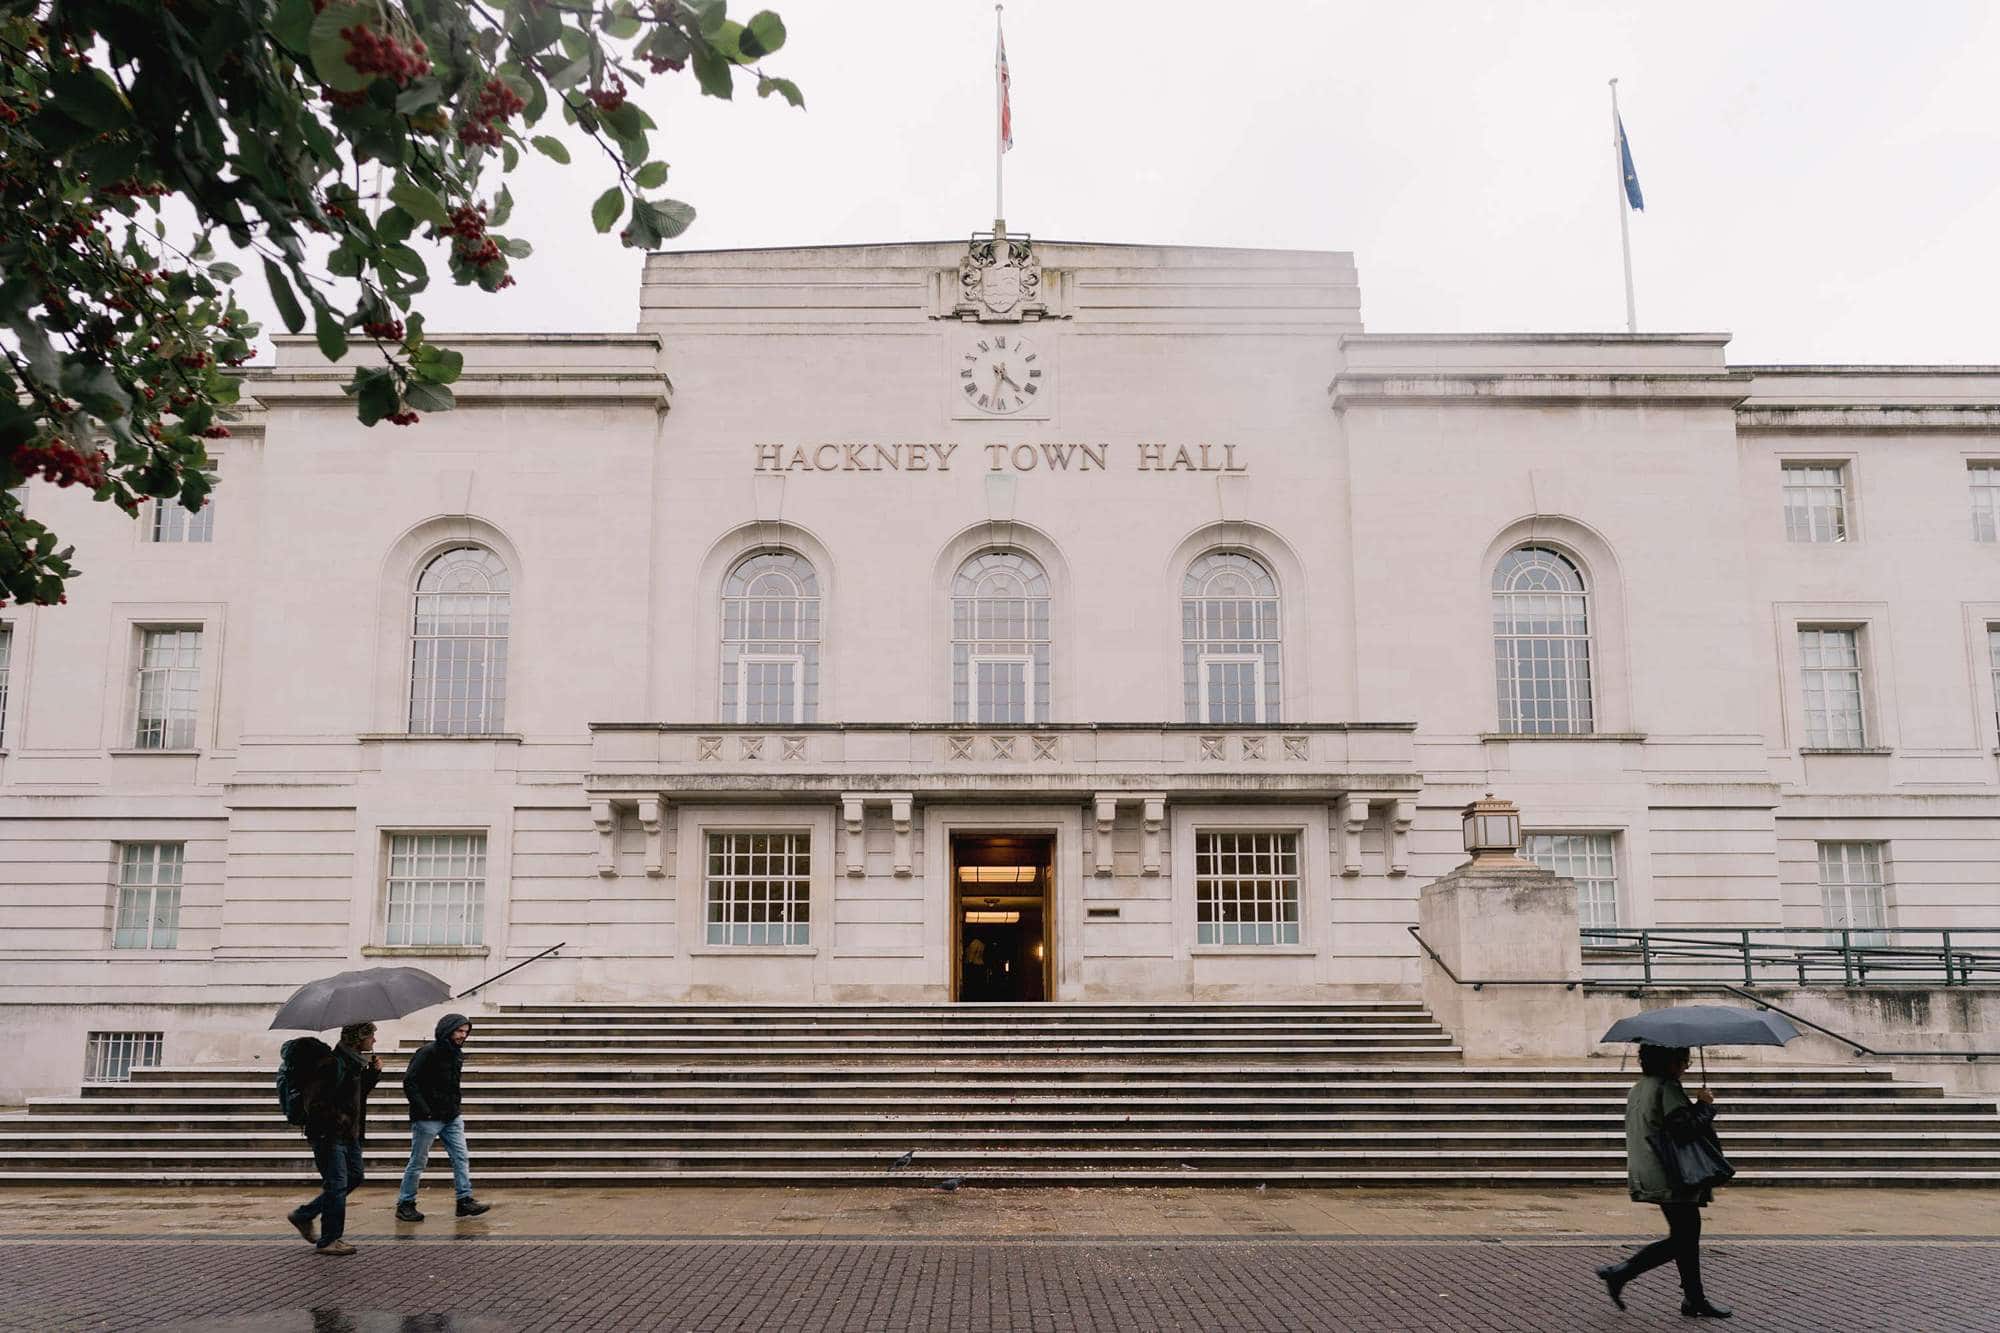 Hackney Town Hall Wedding Venue in London